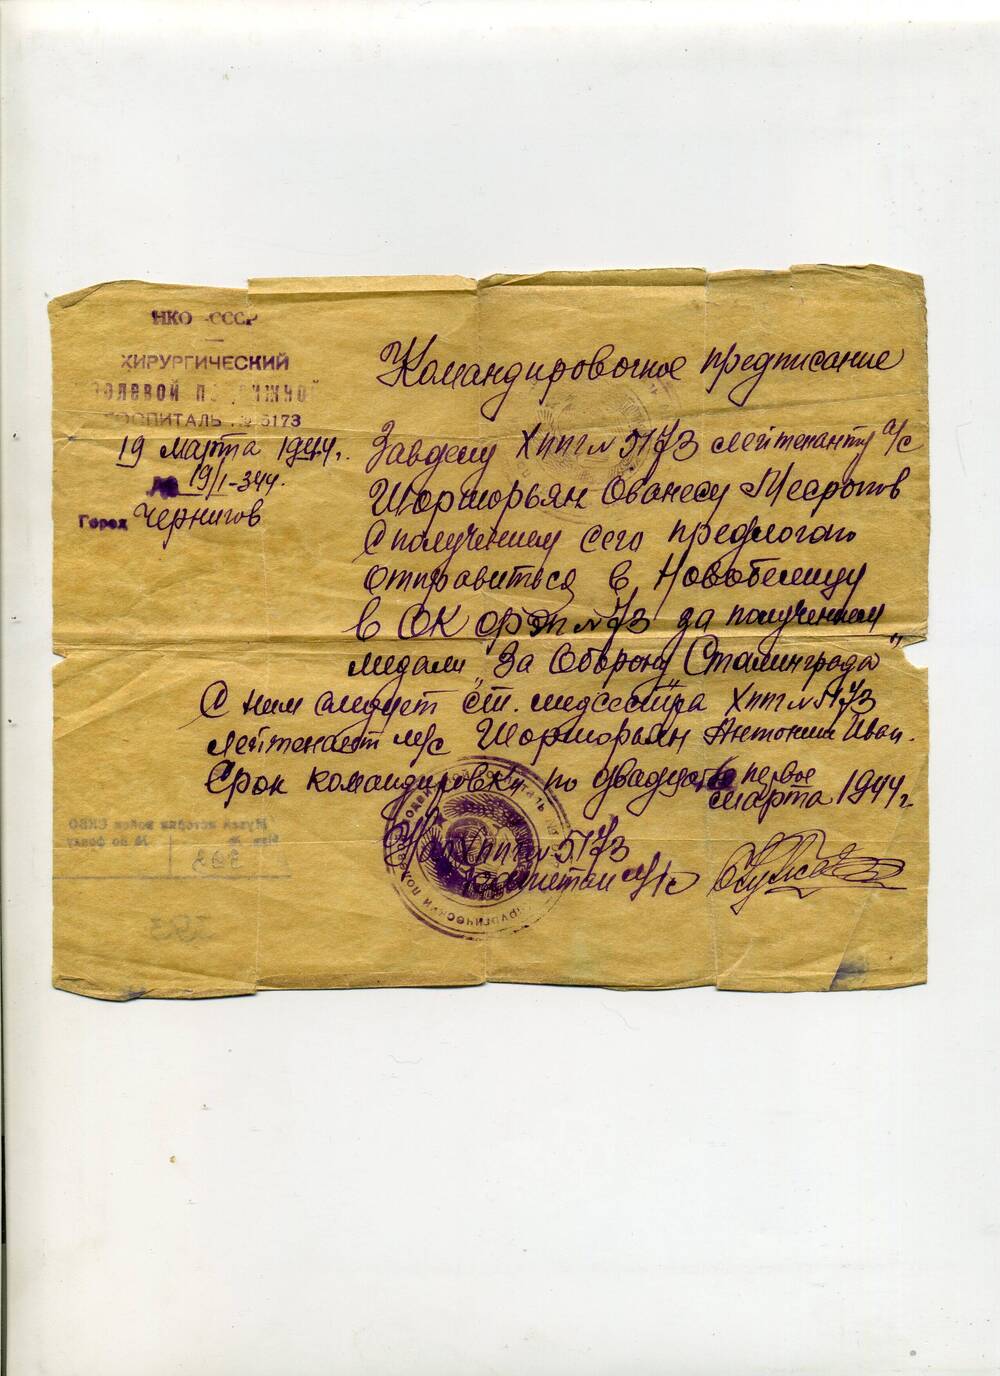 Командировочное предписание старшему лейтенанту О.М.Шоршорьян для получения медали За оборону Сталинграда, 19 марта 1944 года.